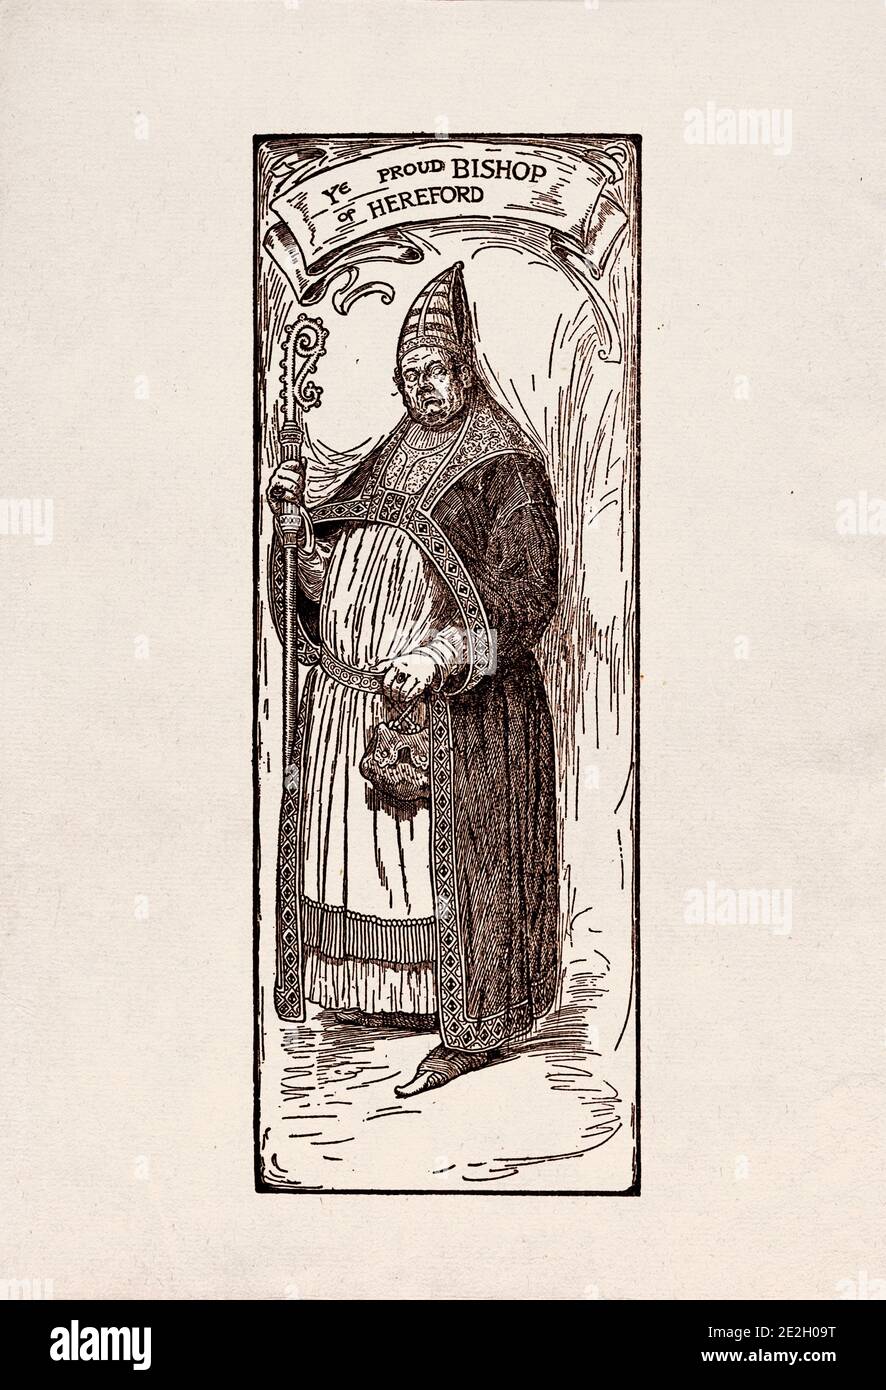 Gravure antique de personnages littéraires du folklore anglais des légendes Robin des Bois. Le fier évêque de Hereford. Par Louis Rhead. 1912 Banque D'Images